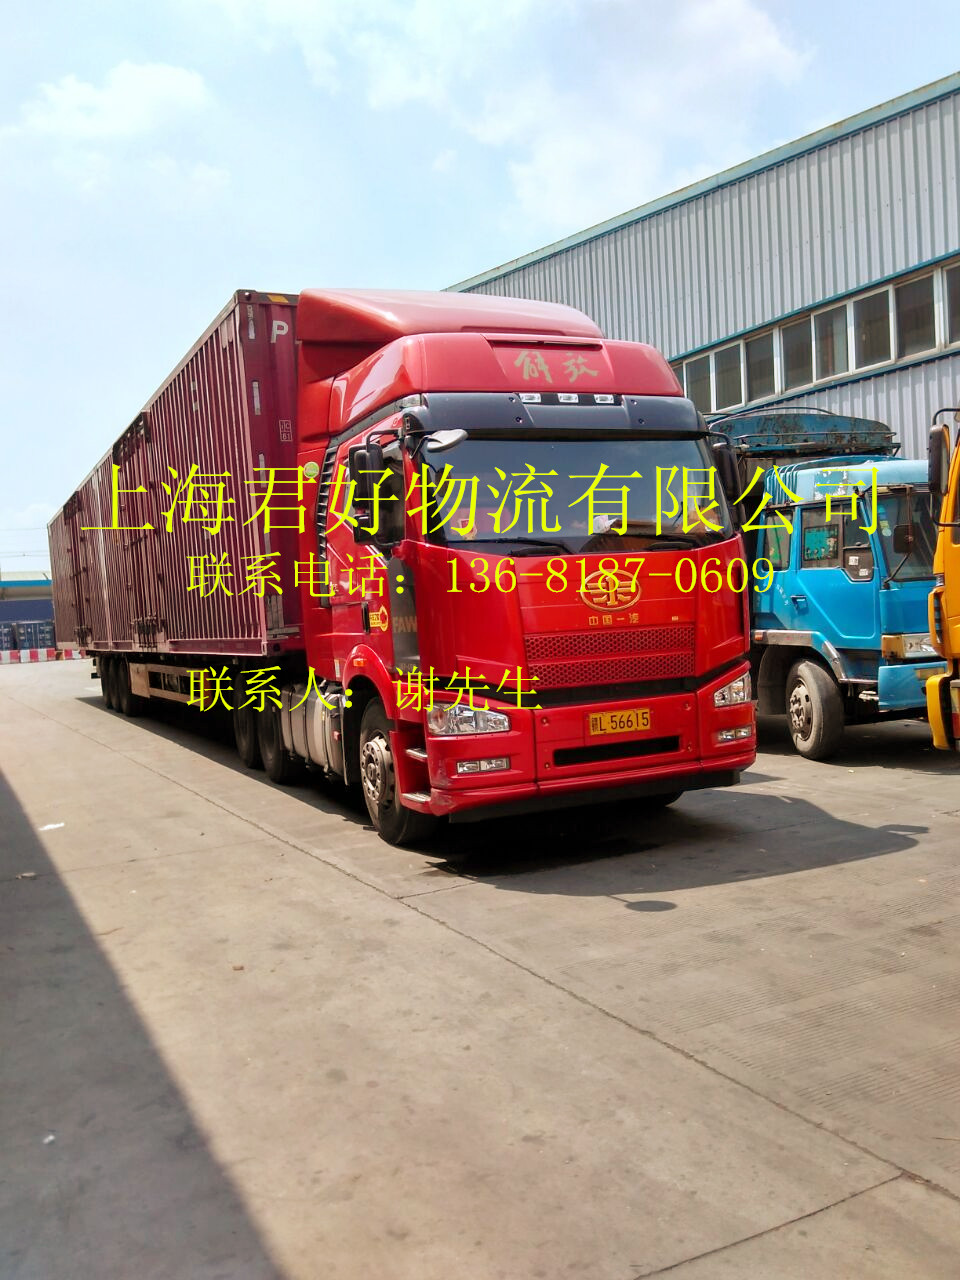 上海到北京物流专线  上海到天津物流公司  上海危险品物流公司  上海物流公司